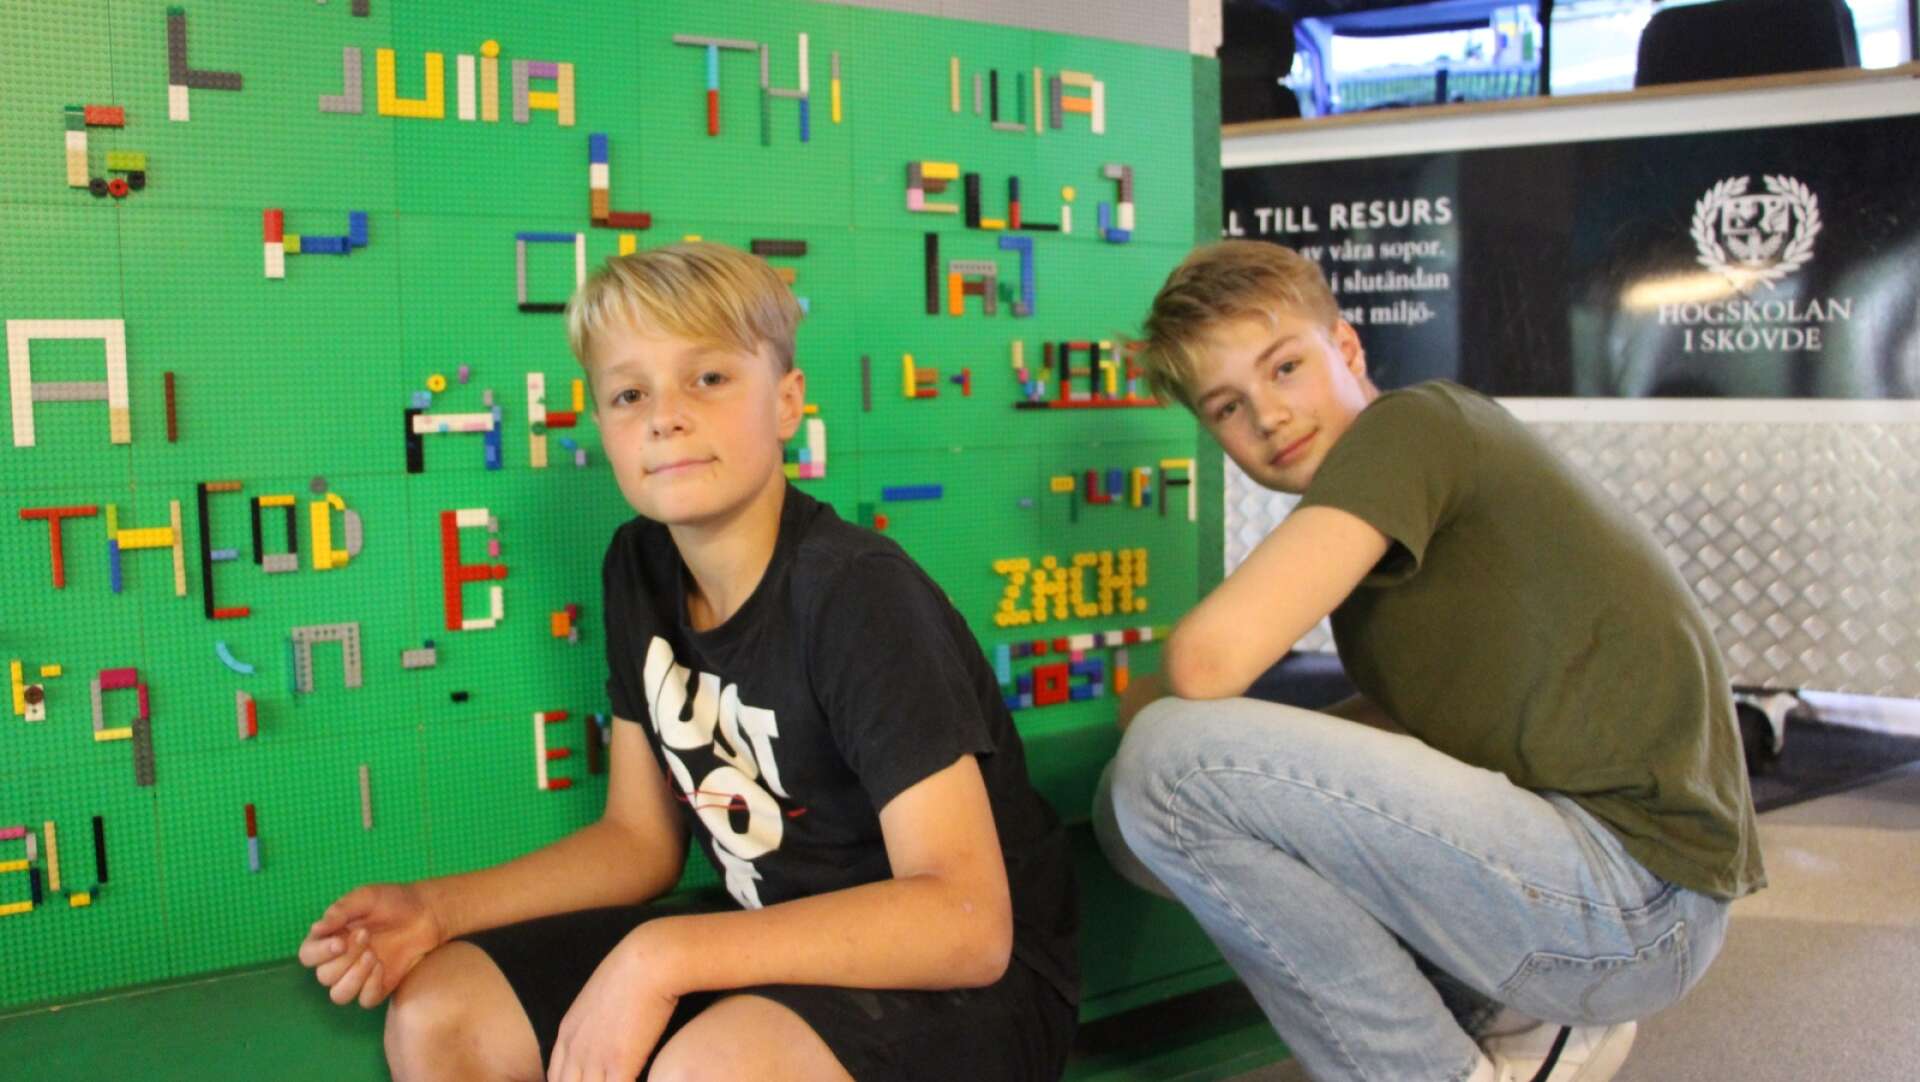 Bröderna Zacharias och Caspian skrev sina namn med Lego på väggen.